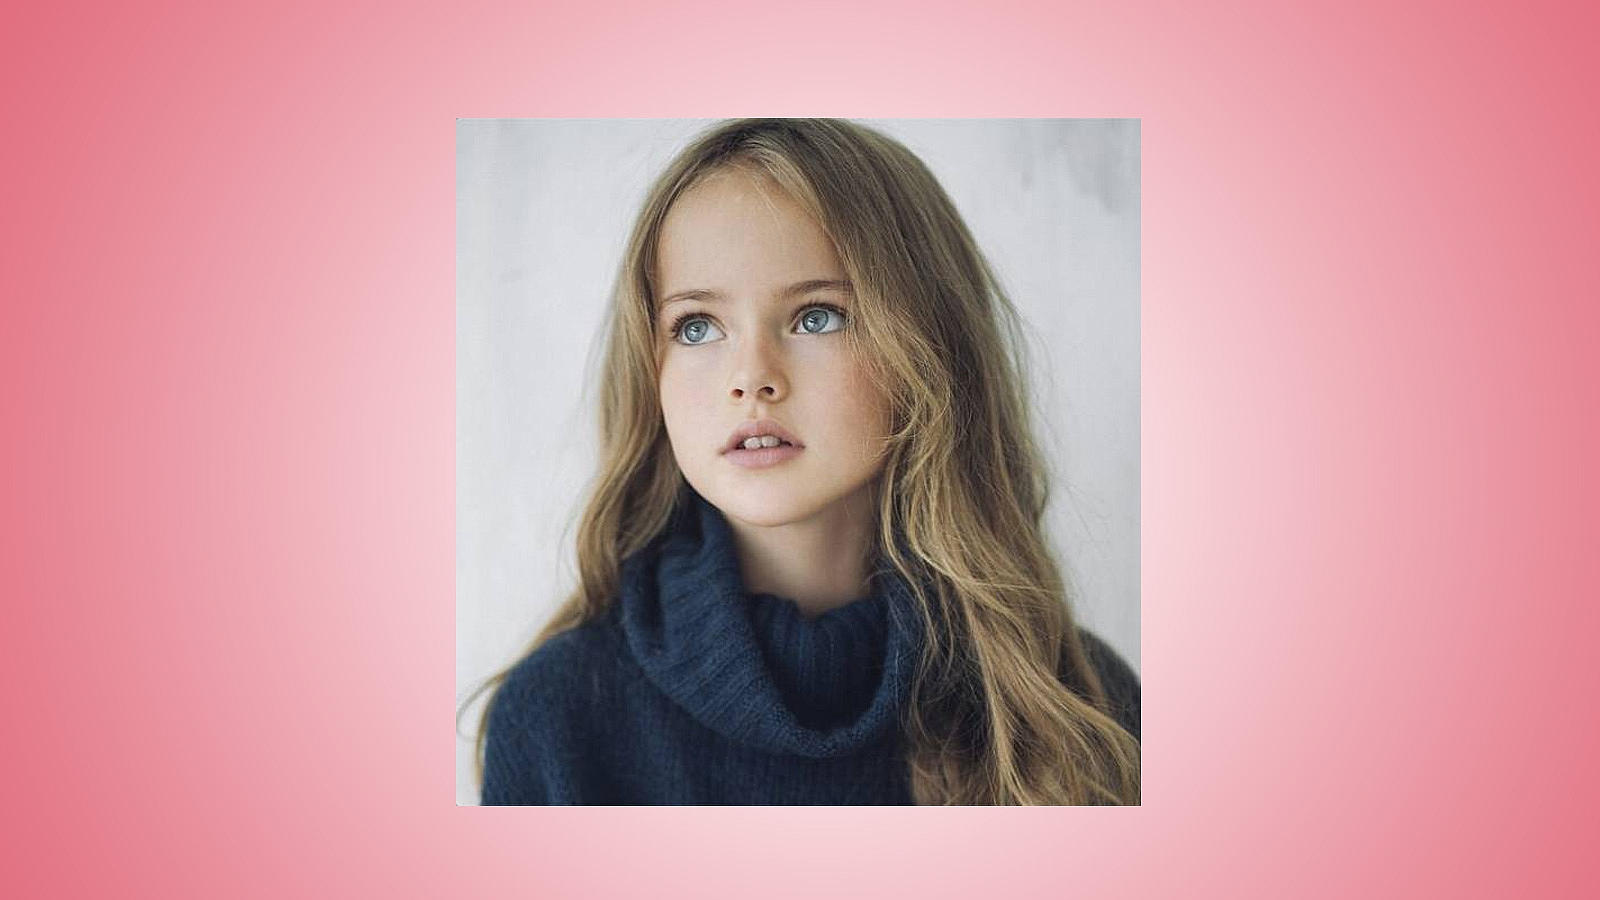 La pequeña Kristina ya ha hecho su aparición en la portada de Vogue Bambini, una publicación de Vogue Italia dedicada a los niños